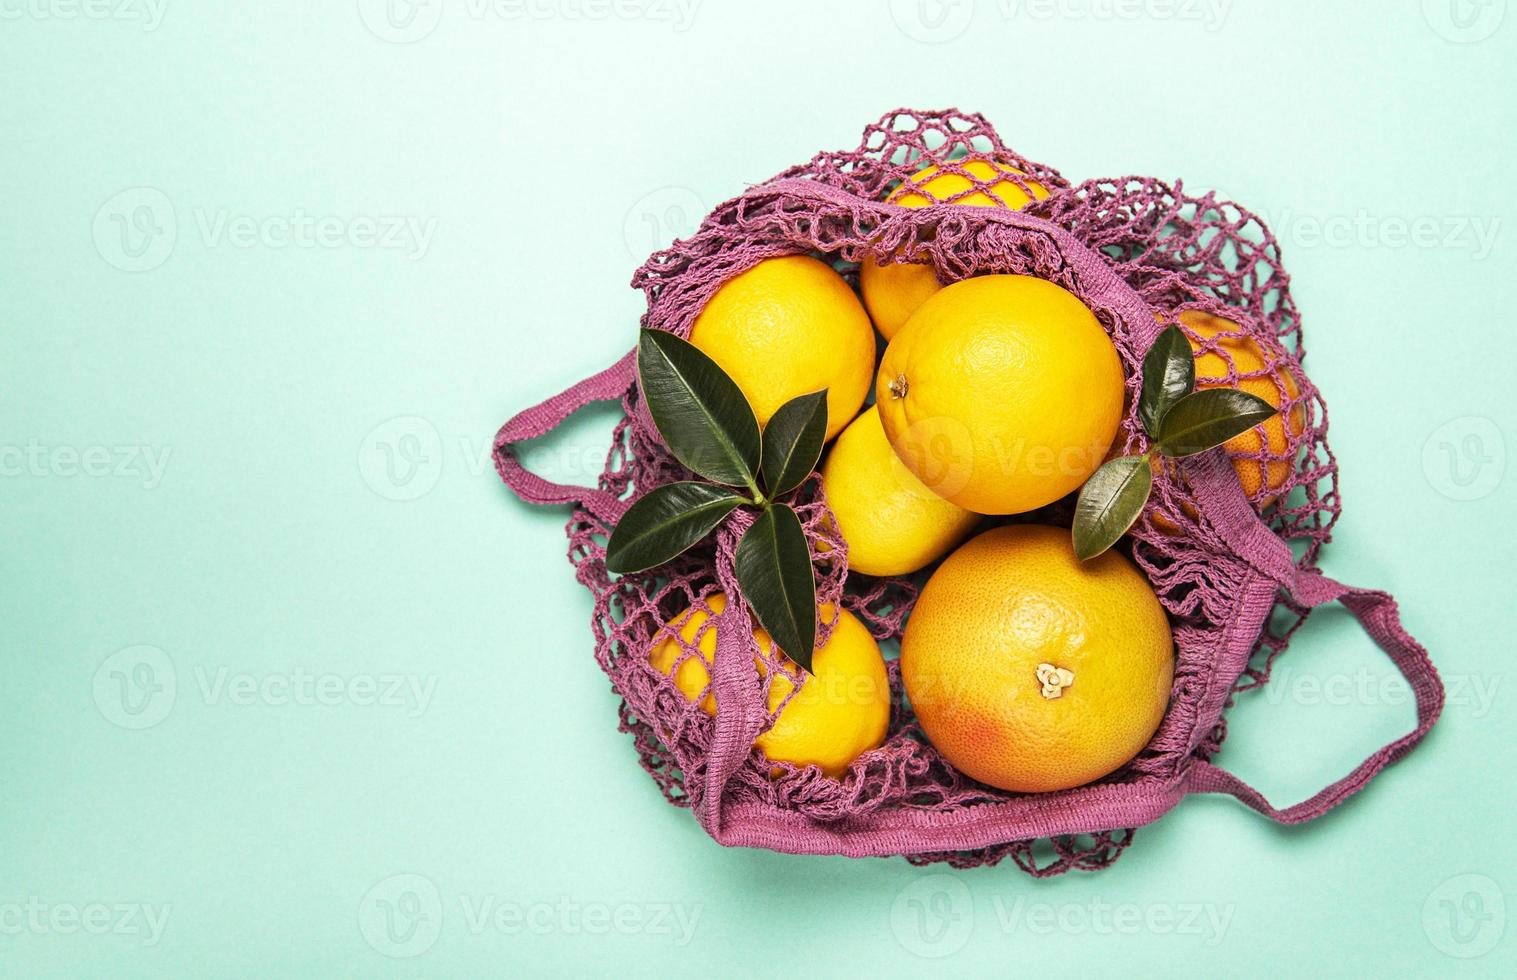 sacola de compras de malha com laranjas foto